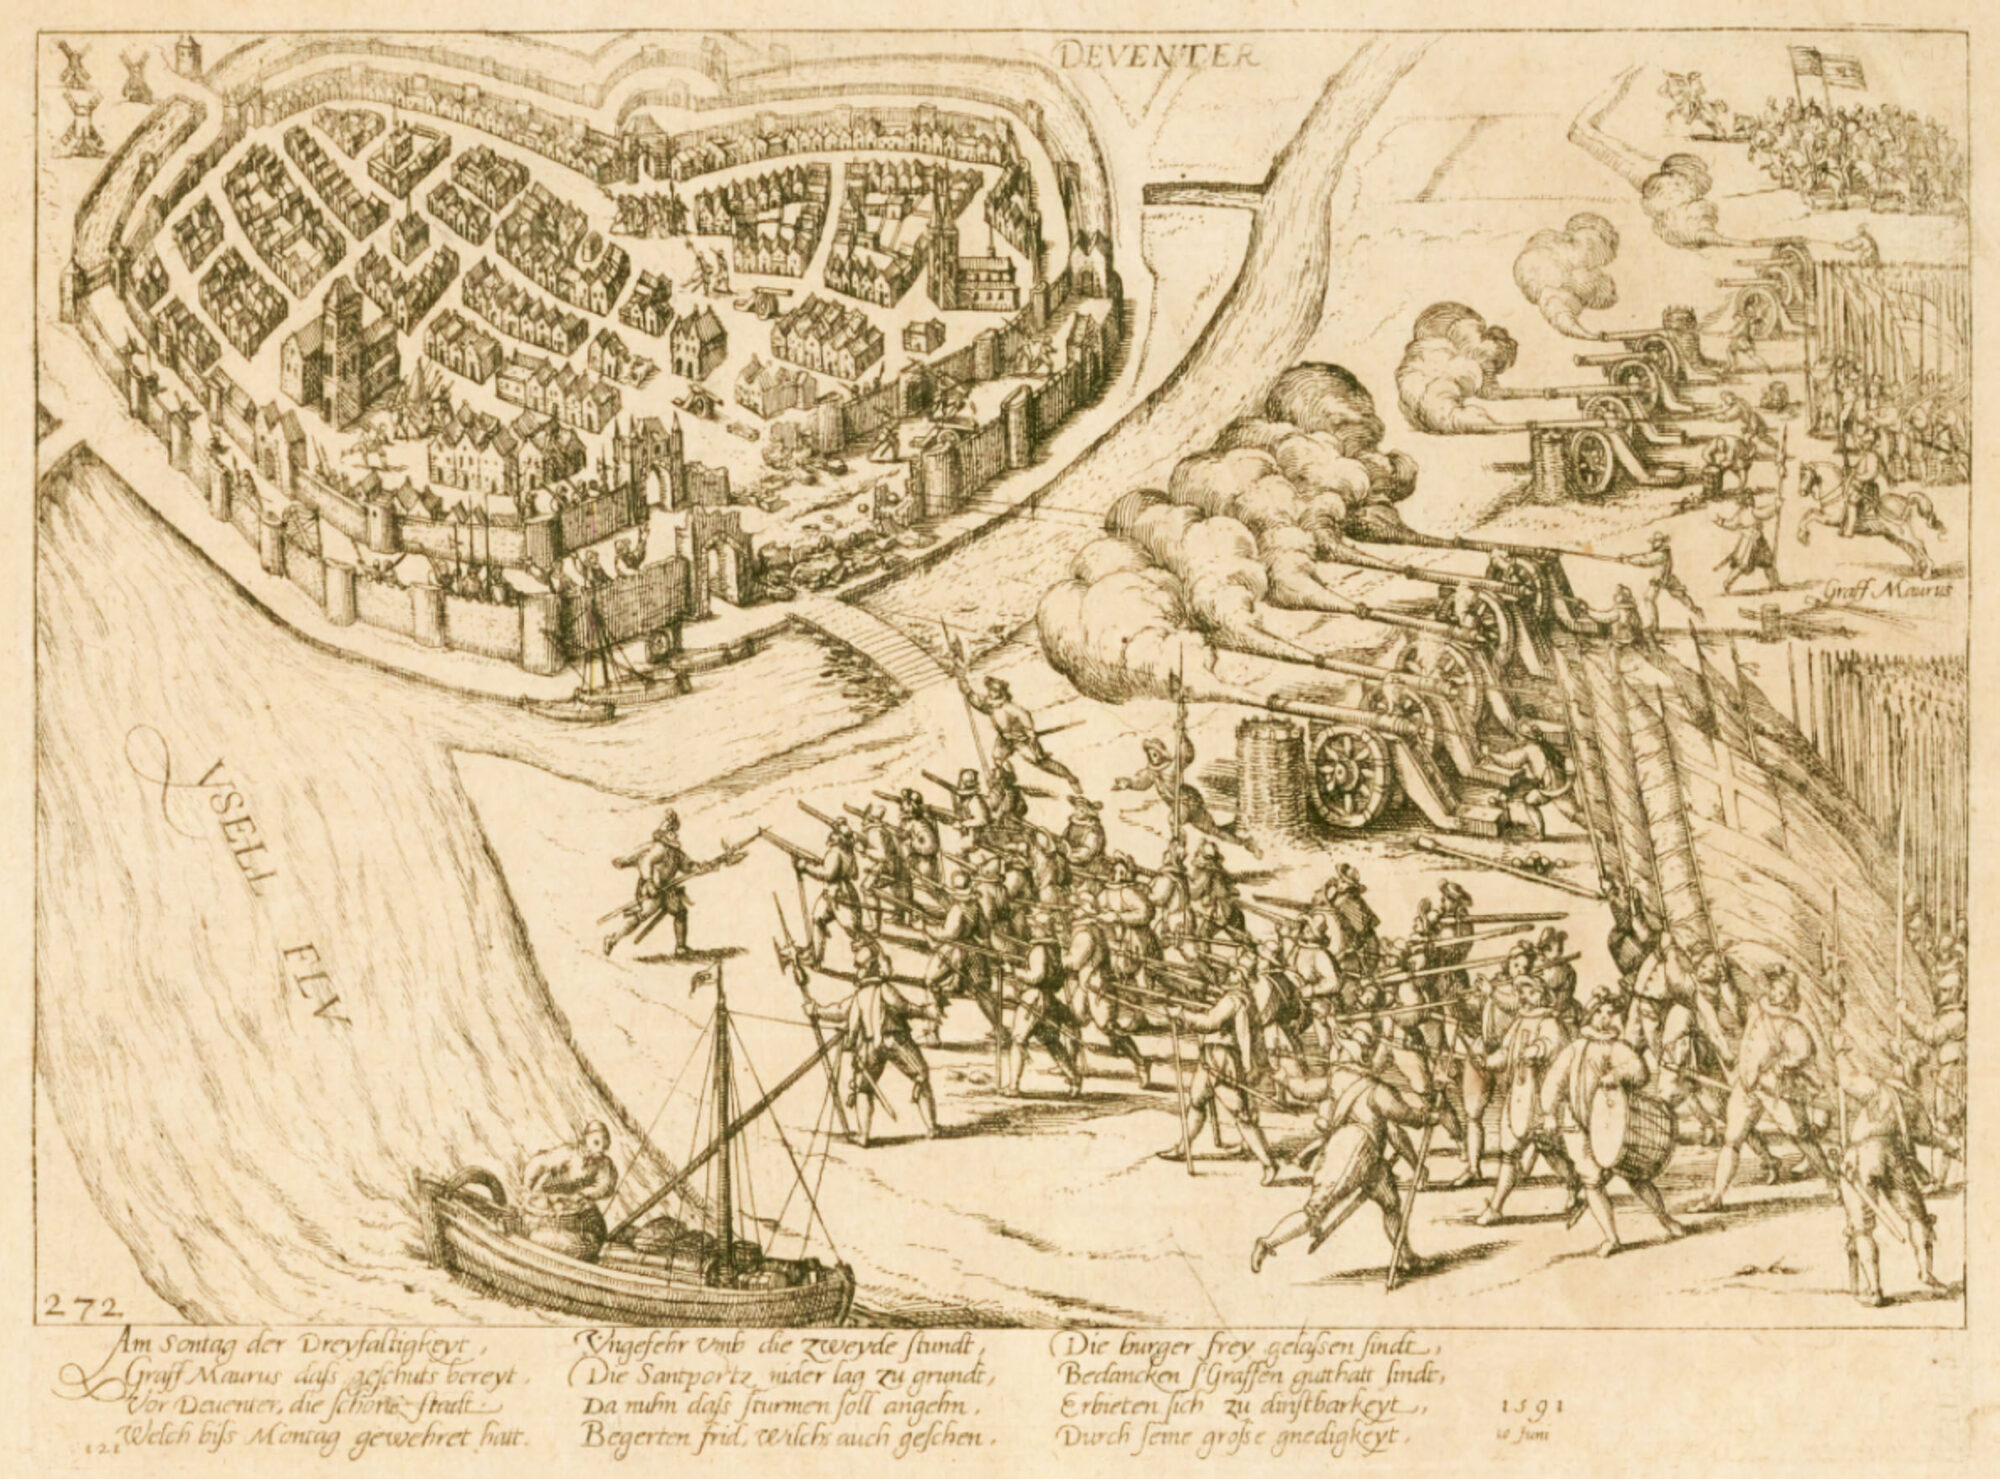 Lezing over Deventer tussen middeleeuwen en Moderne Tijd